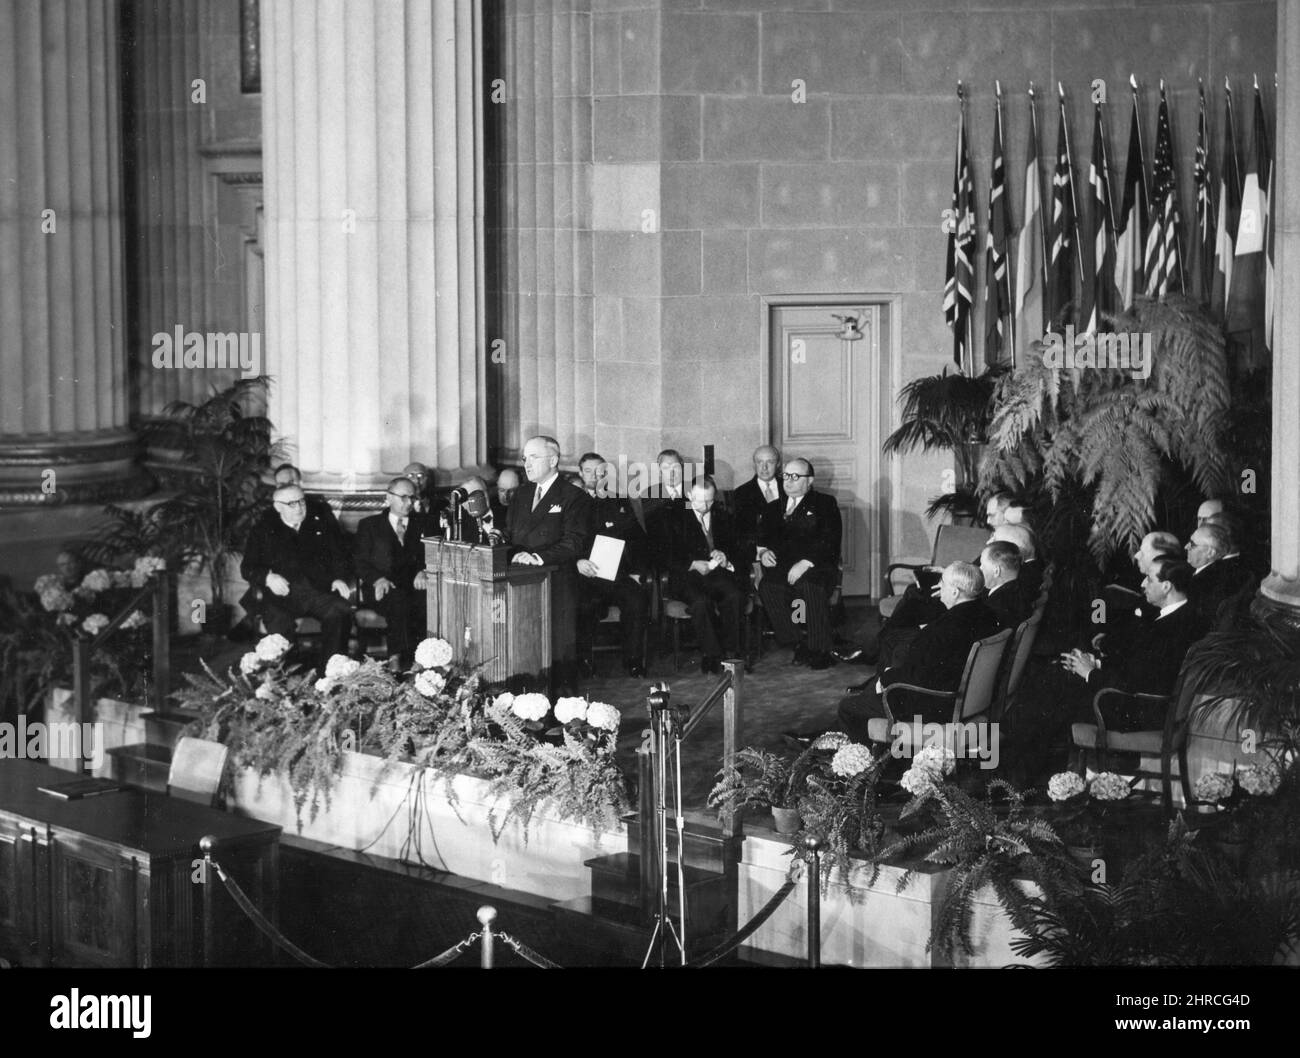 Le Président Harry S. Truman s'adresse à la réunion de signature du Traité de l'Atlantique Nord dans l'Auditorium du Département d'État. Washington, DC, 4 avril 1949. Département d'État. Banque D'Images